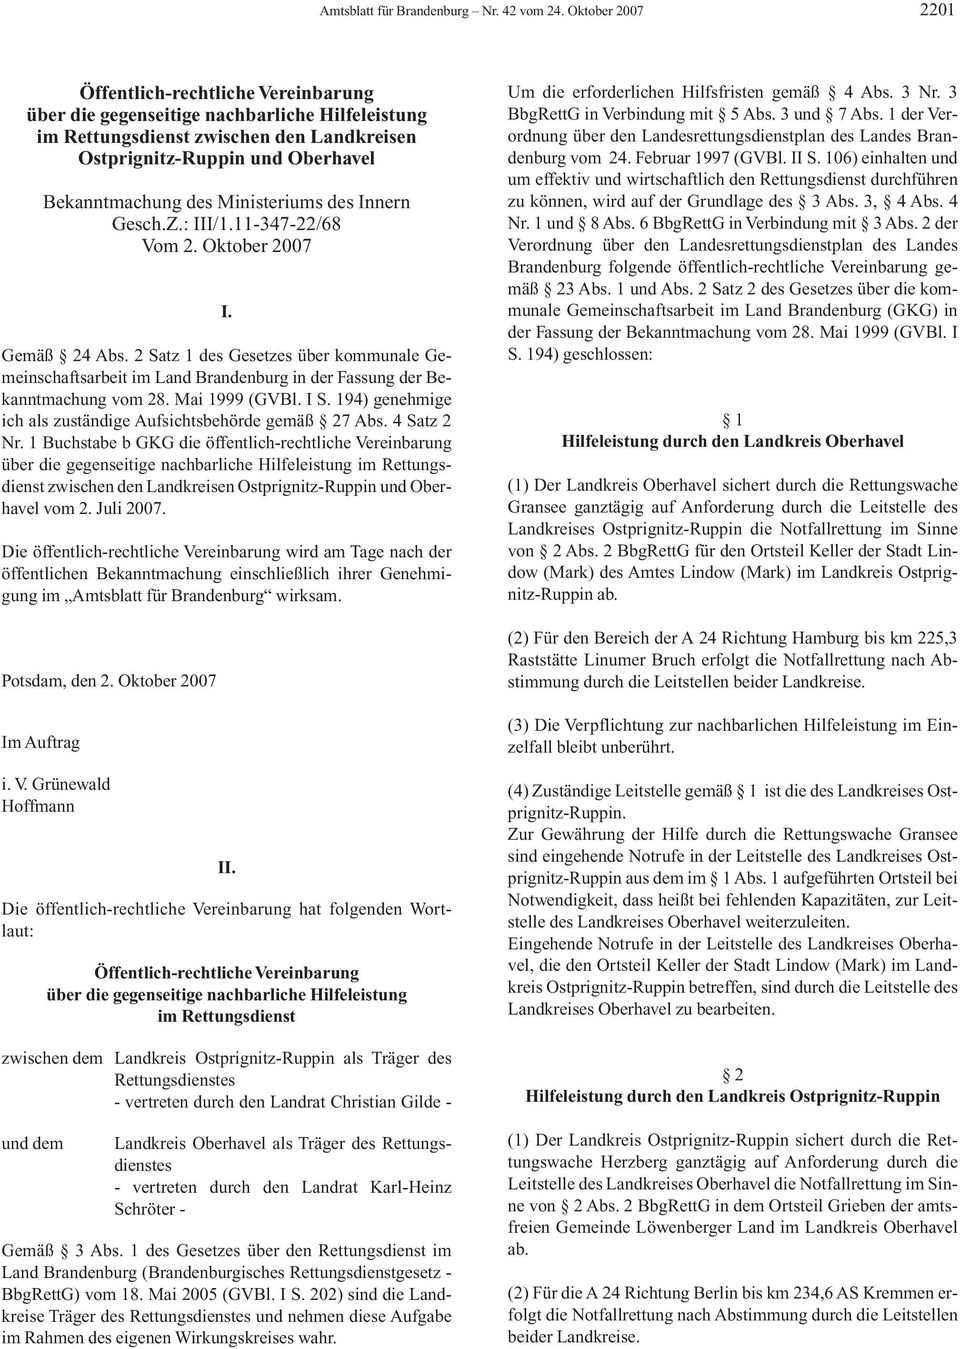 Ministeriums des Innern Gesch.Z.: III/1.11-347-22/68 Vom 2. Oktober 2007 I. Gemäß 24 Abs.